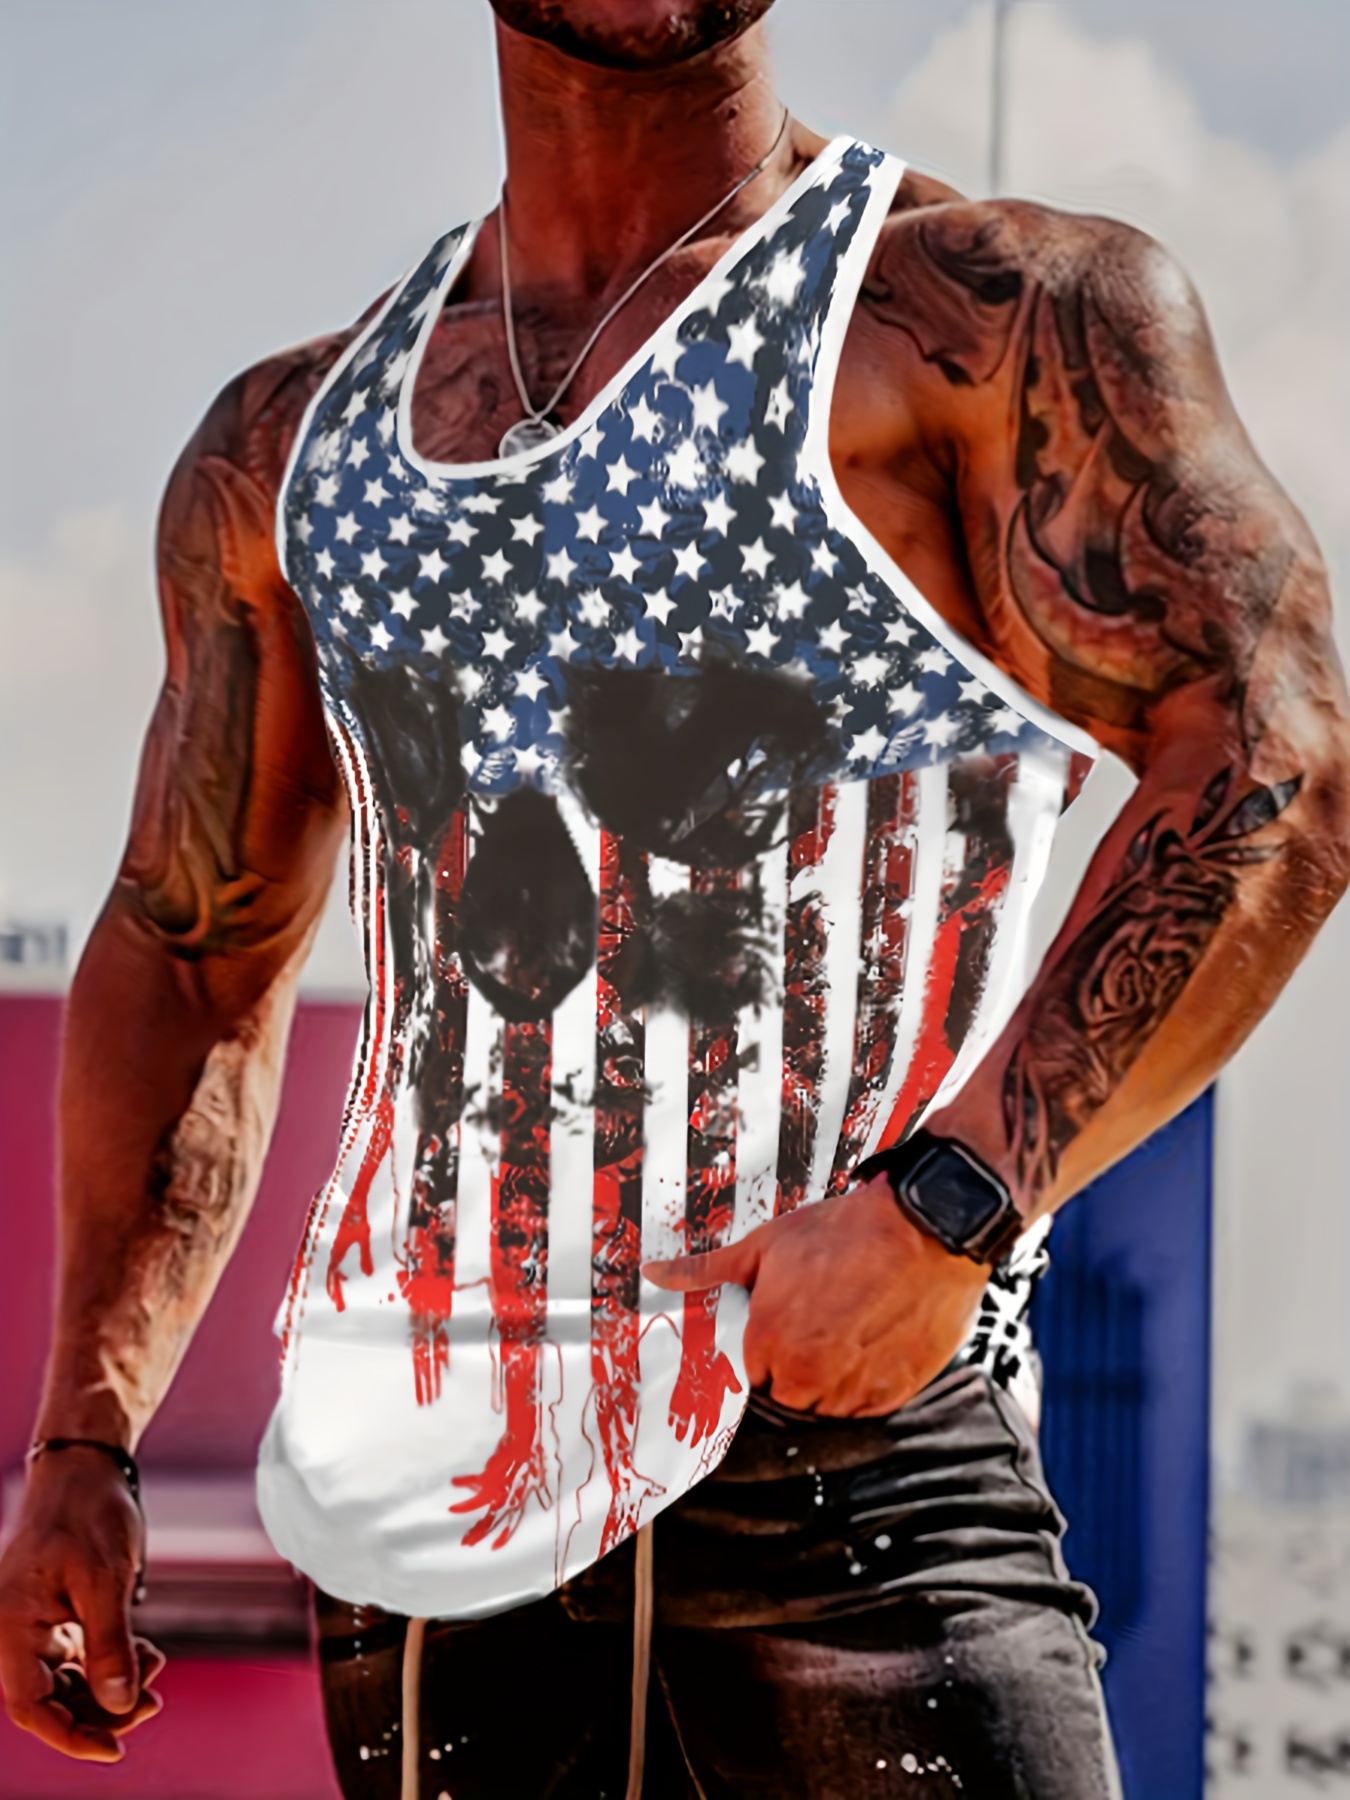 Camiseta Sin Mangas Hombre Manos Tatuadas Gráfico Gesto - Temu Chile